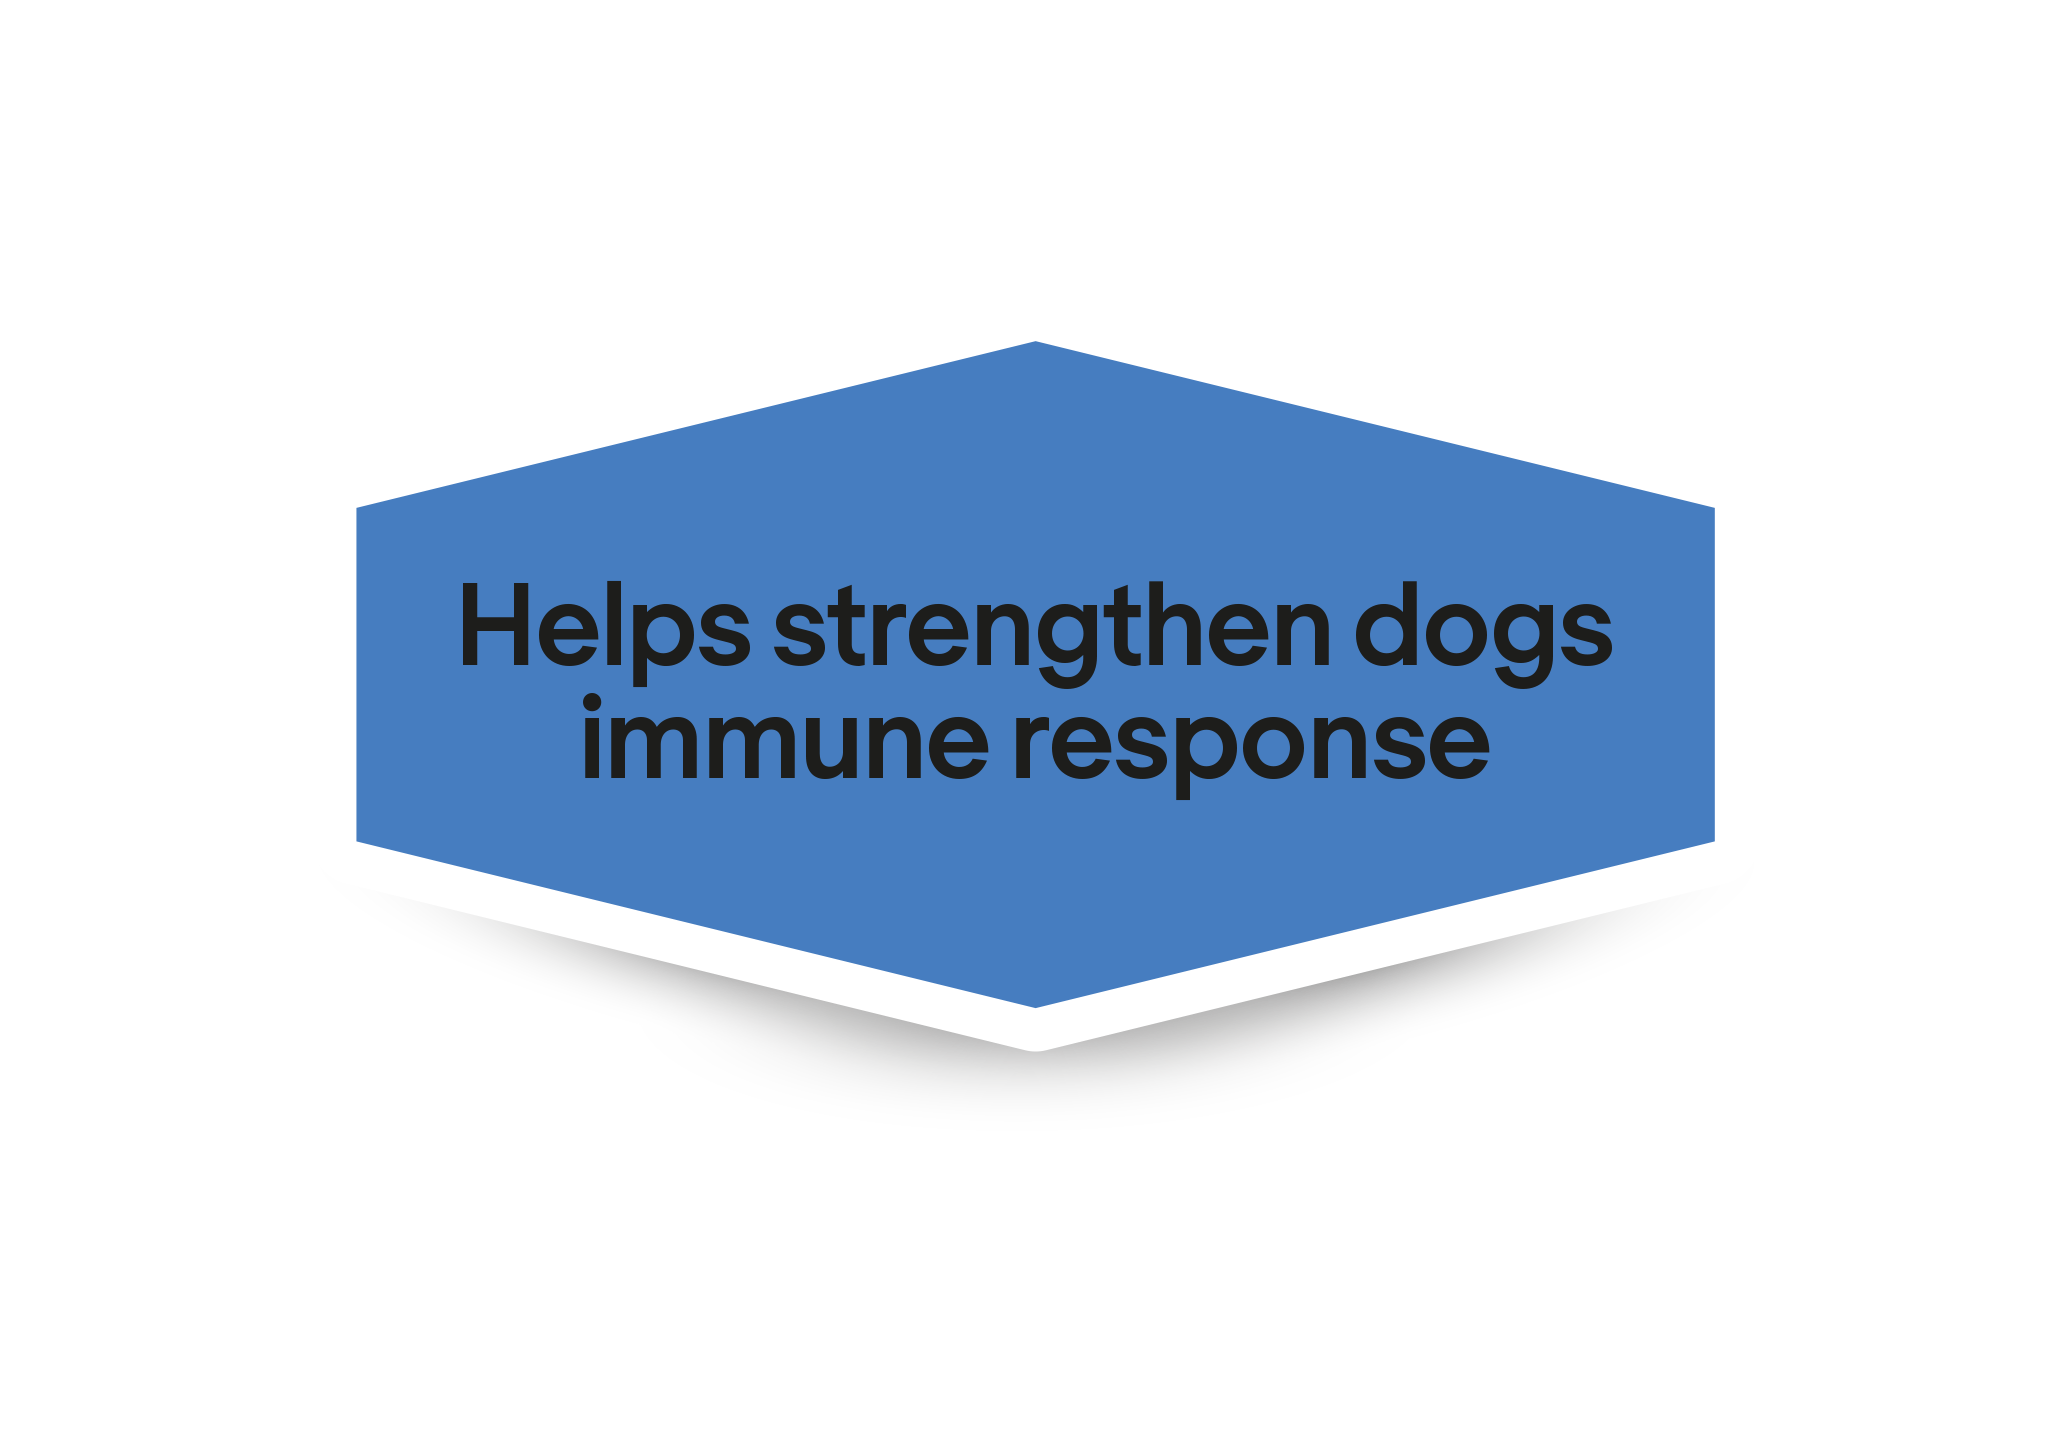 Βοηθά στην ενίσχυση της ανοσολογικής απόκρισης των σκύλων